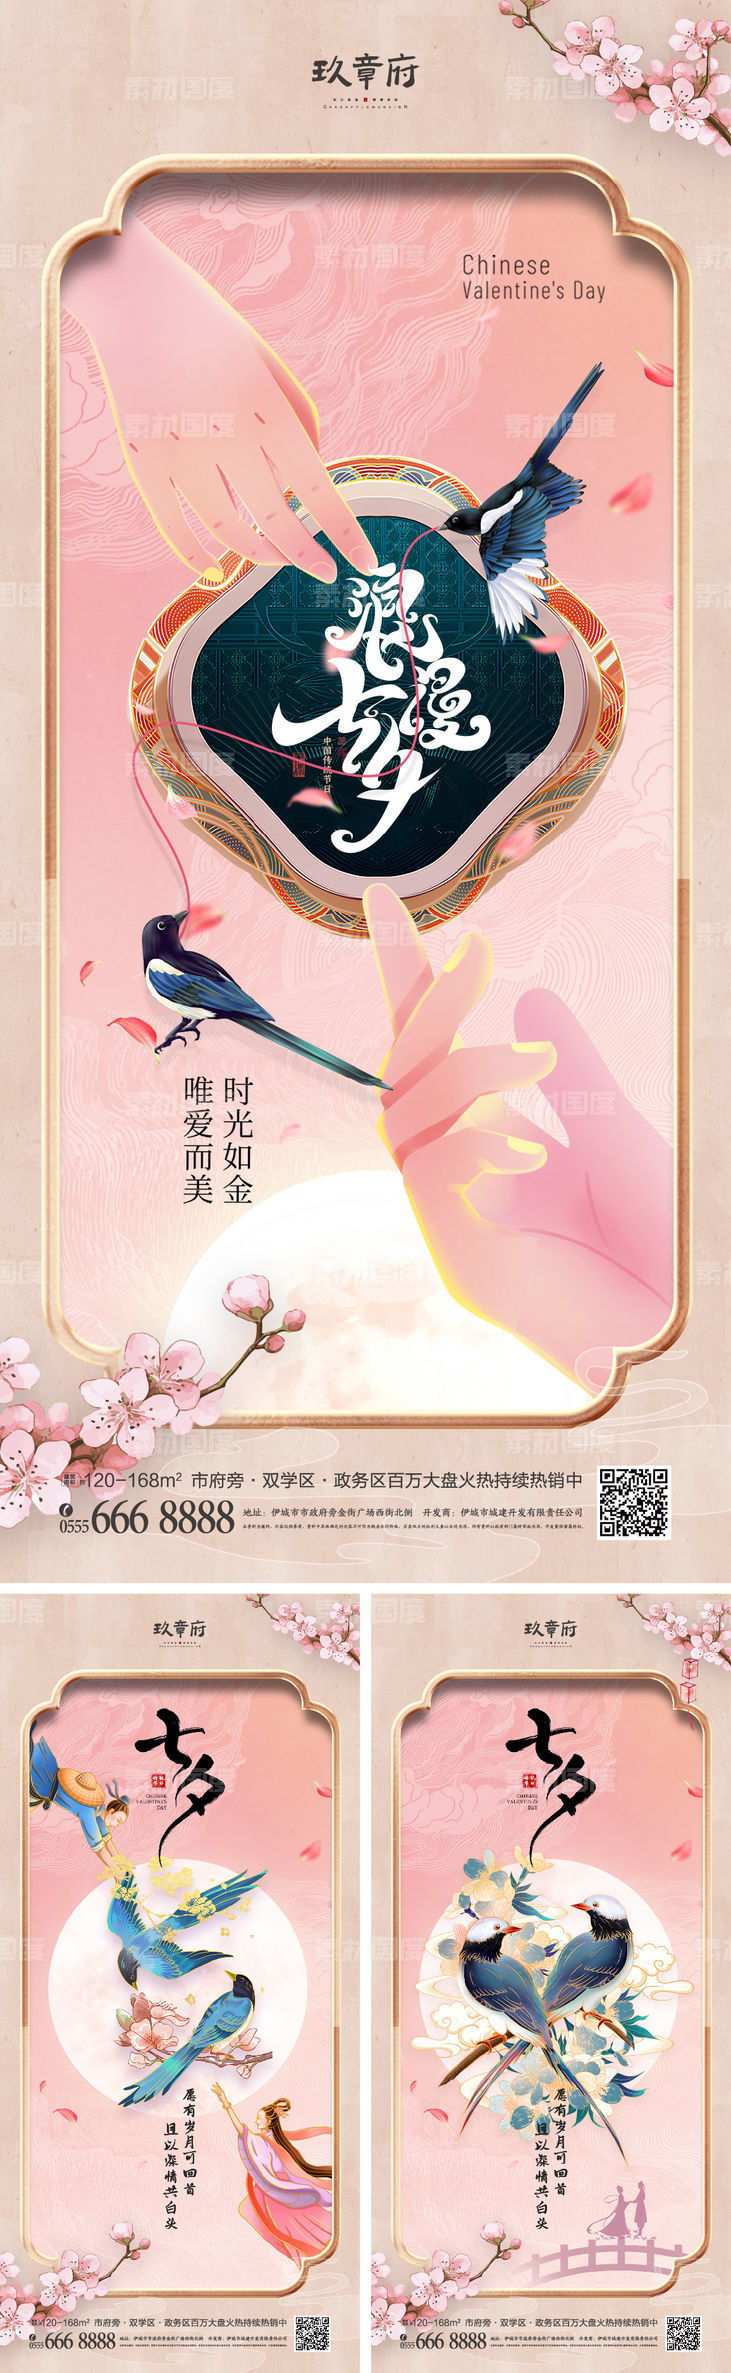 七夕 情人节 中式 中国风 喜鹊 牵手 